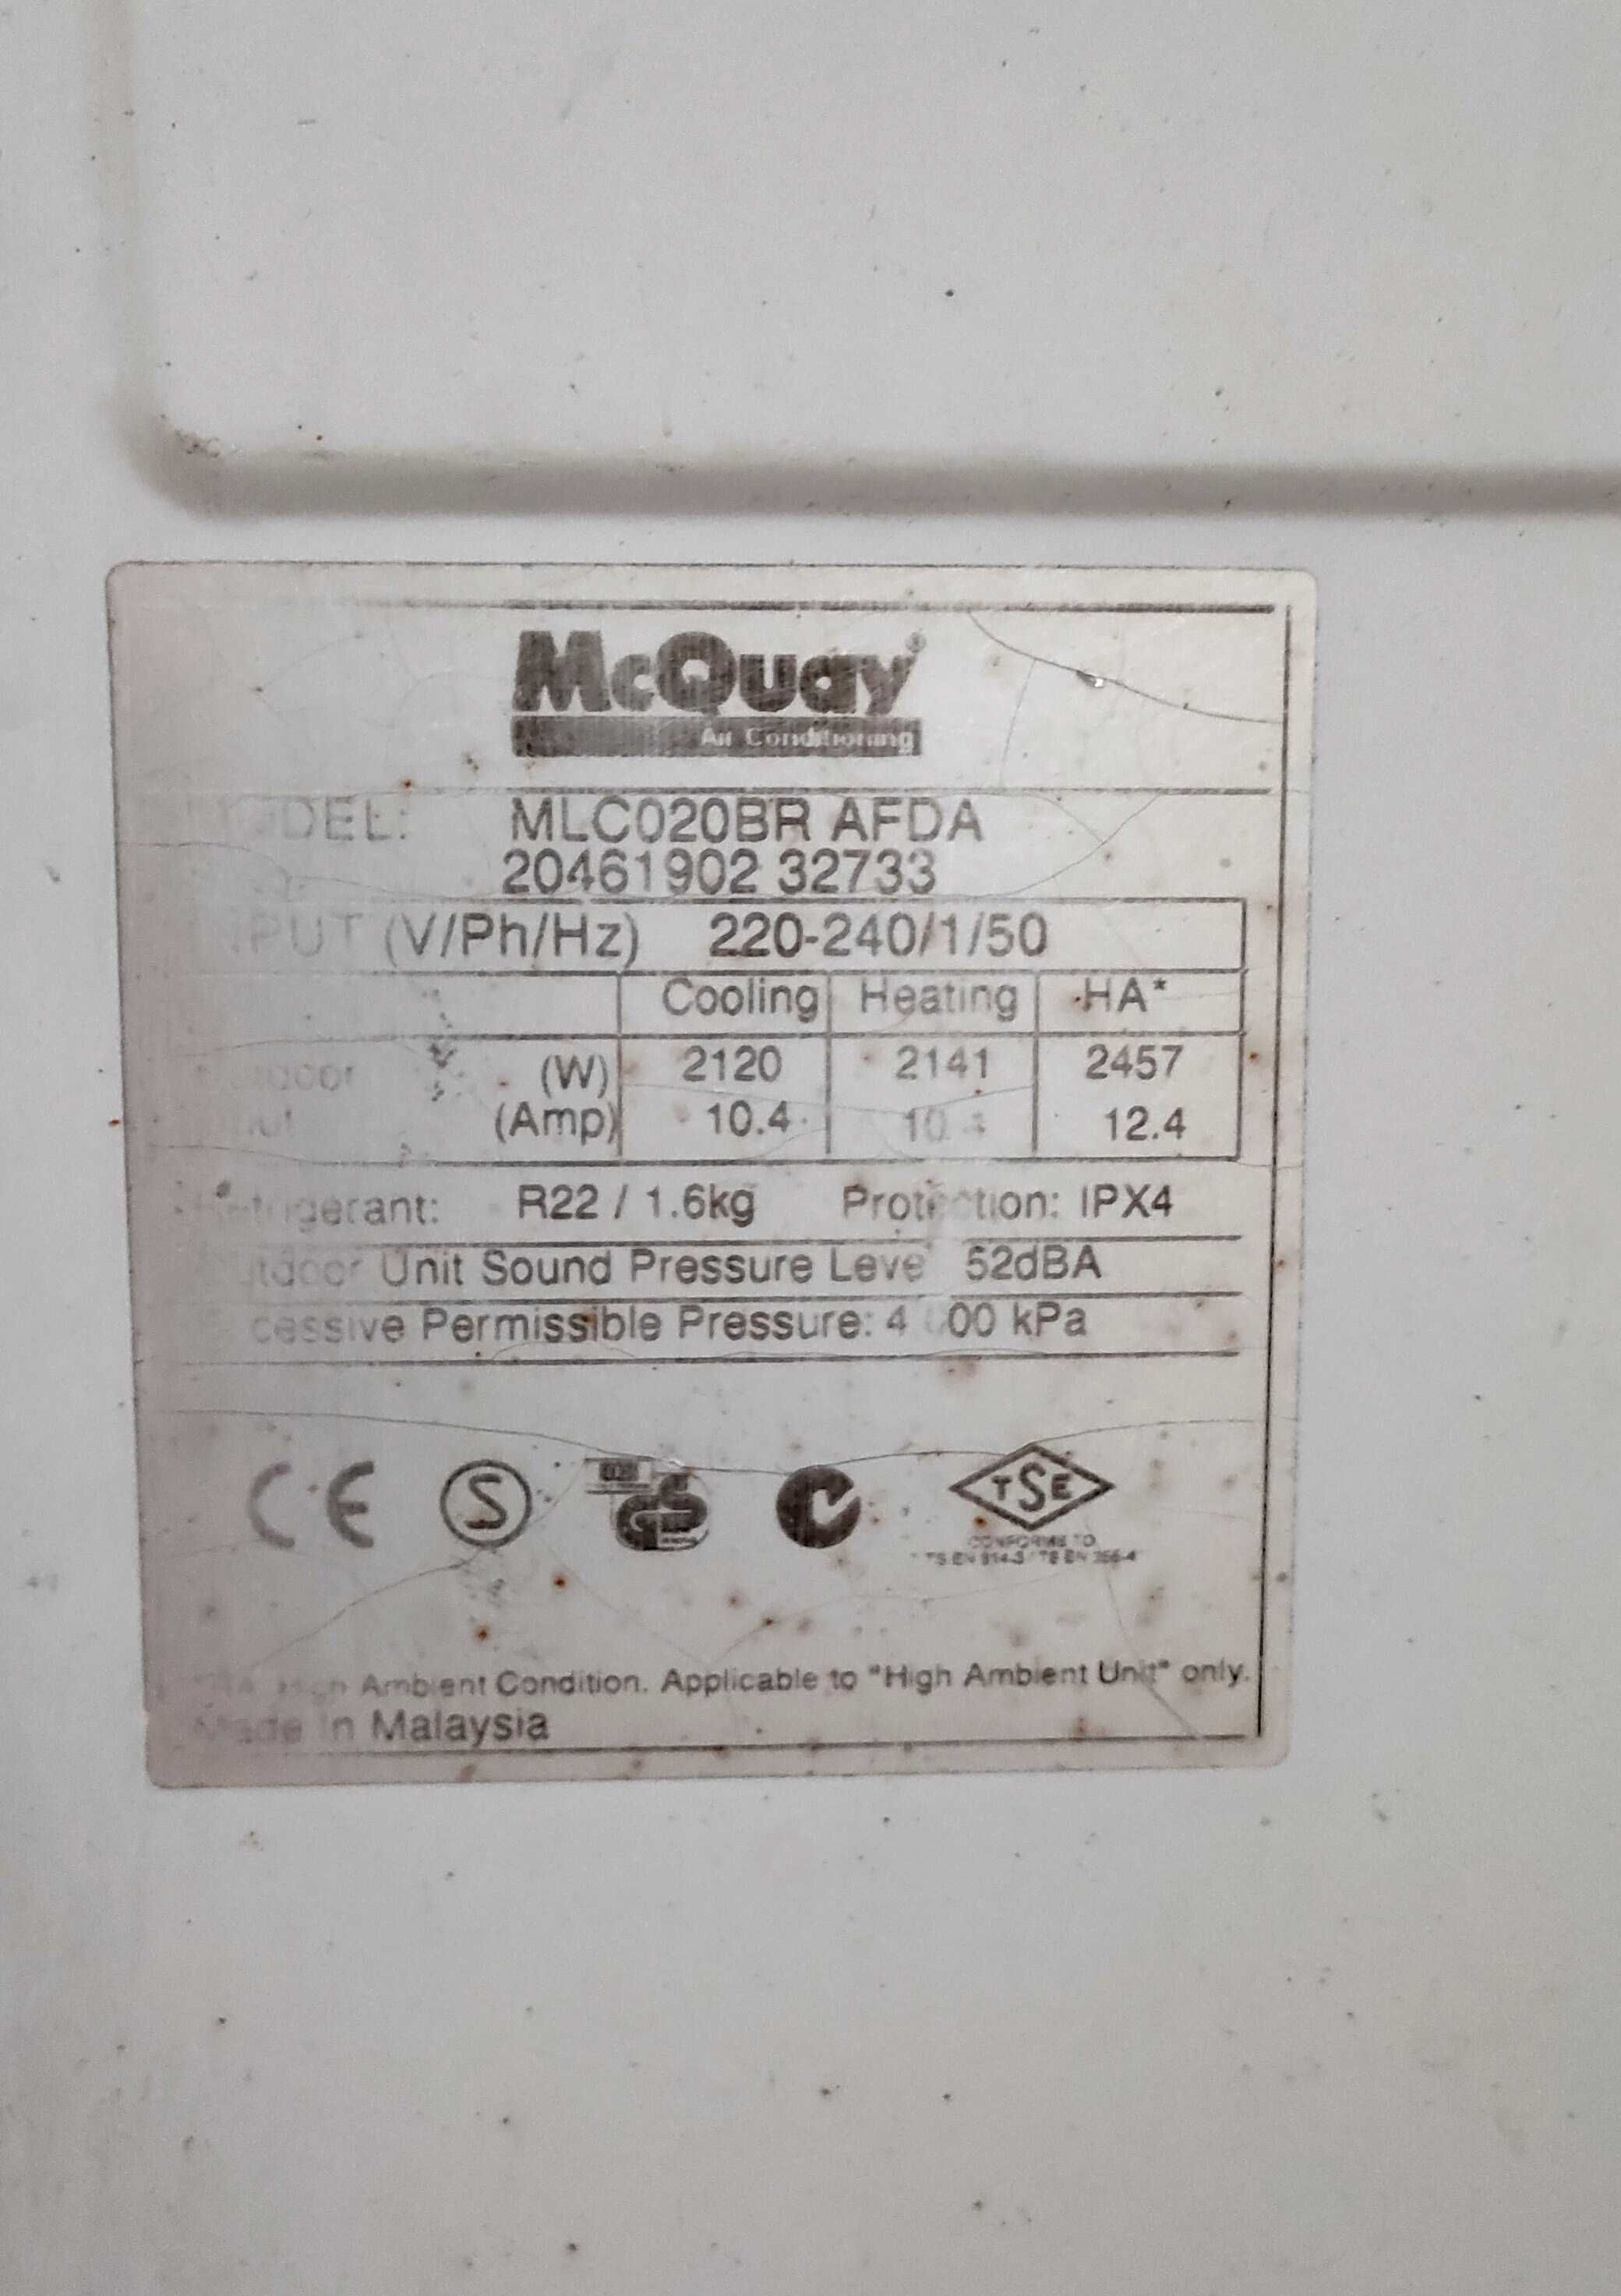 Кондиционер McQuay MLC020BR AFDA (58 кв.м)